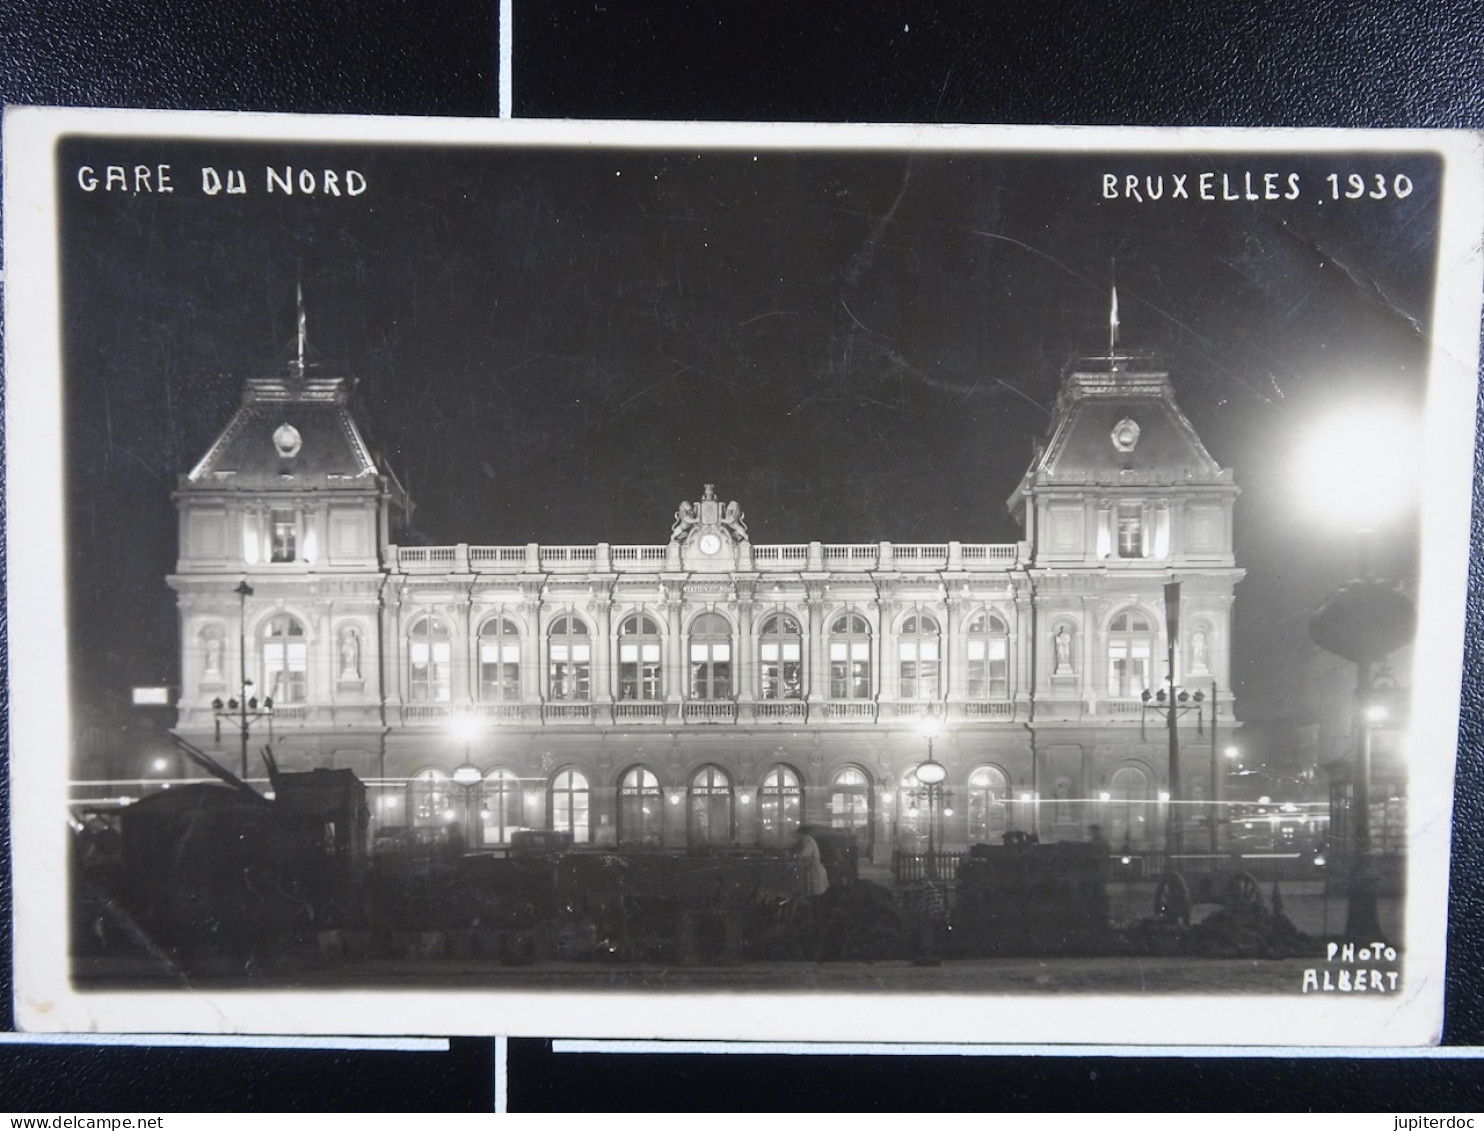 Bruxelles 1930 Gare Du Nord (Photo Albert) - Pubs, Hotels, Restaurants